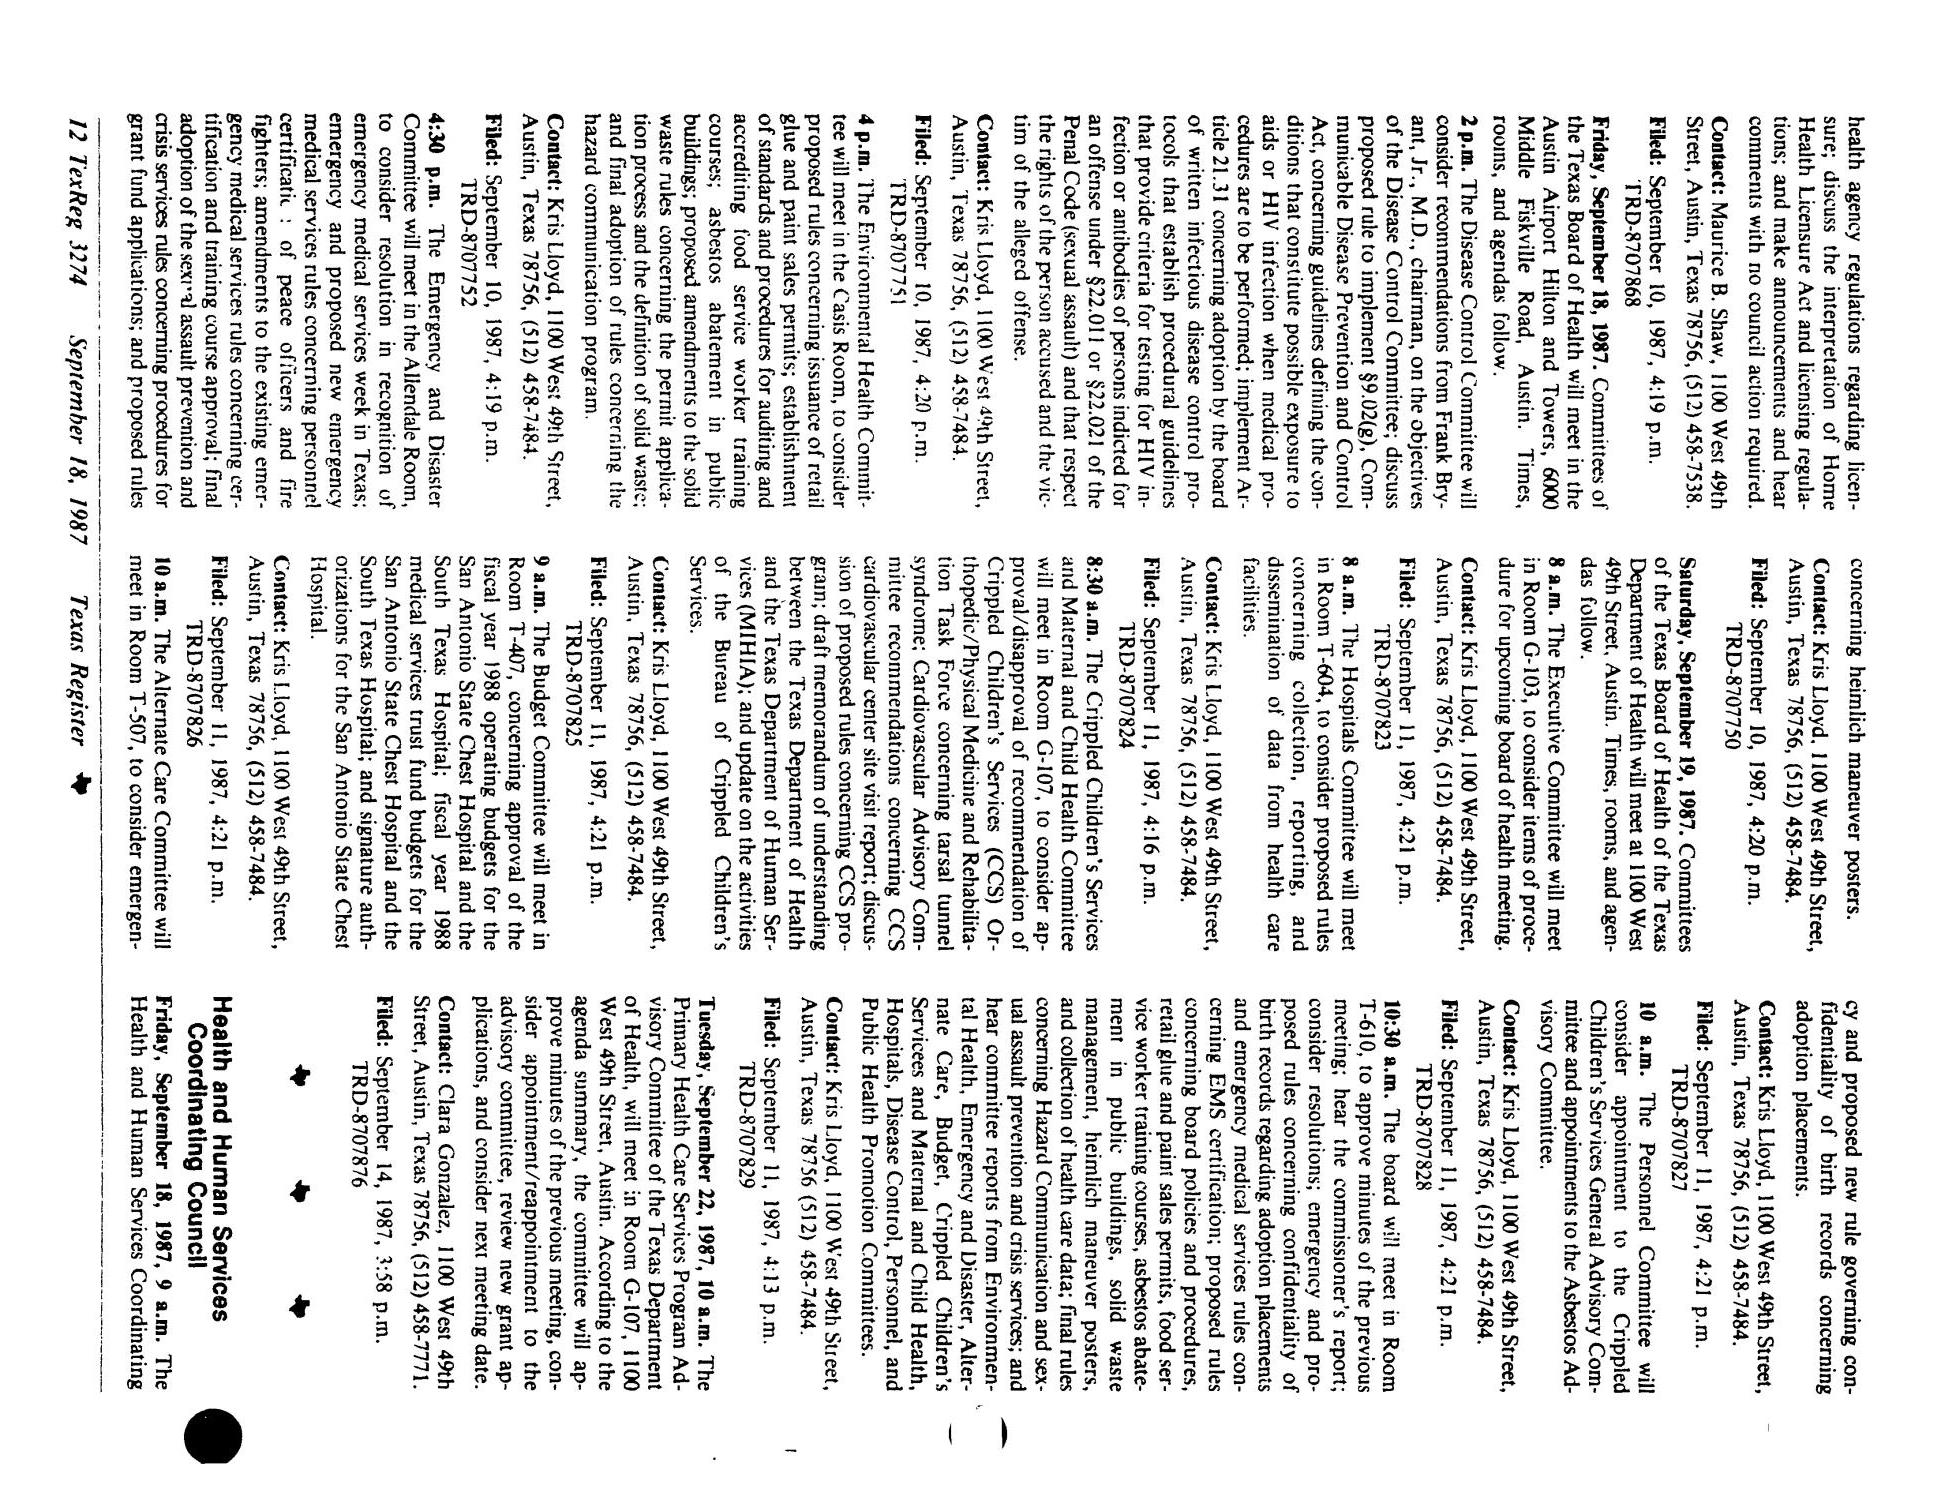 Texas Register, Volume 12, Number 70, Pages 3237-3293, September 18, 1987
                                                
                                                    3274
                                                